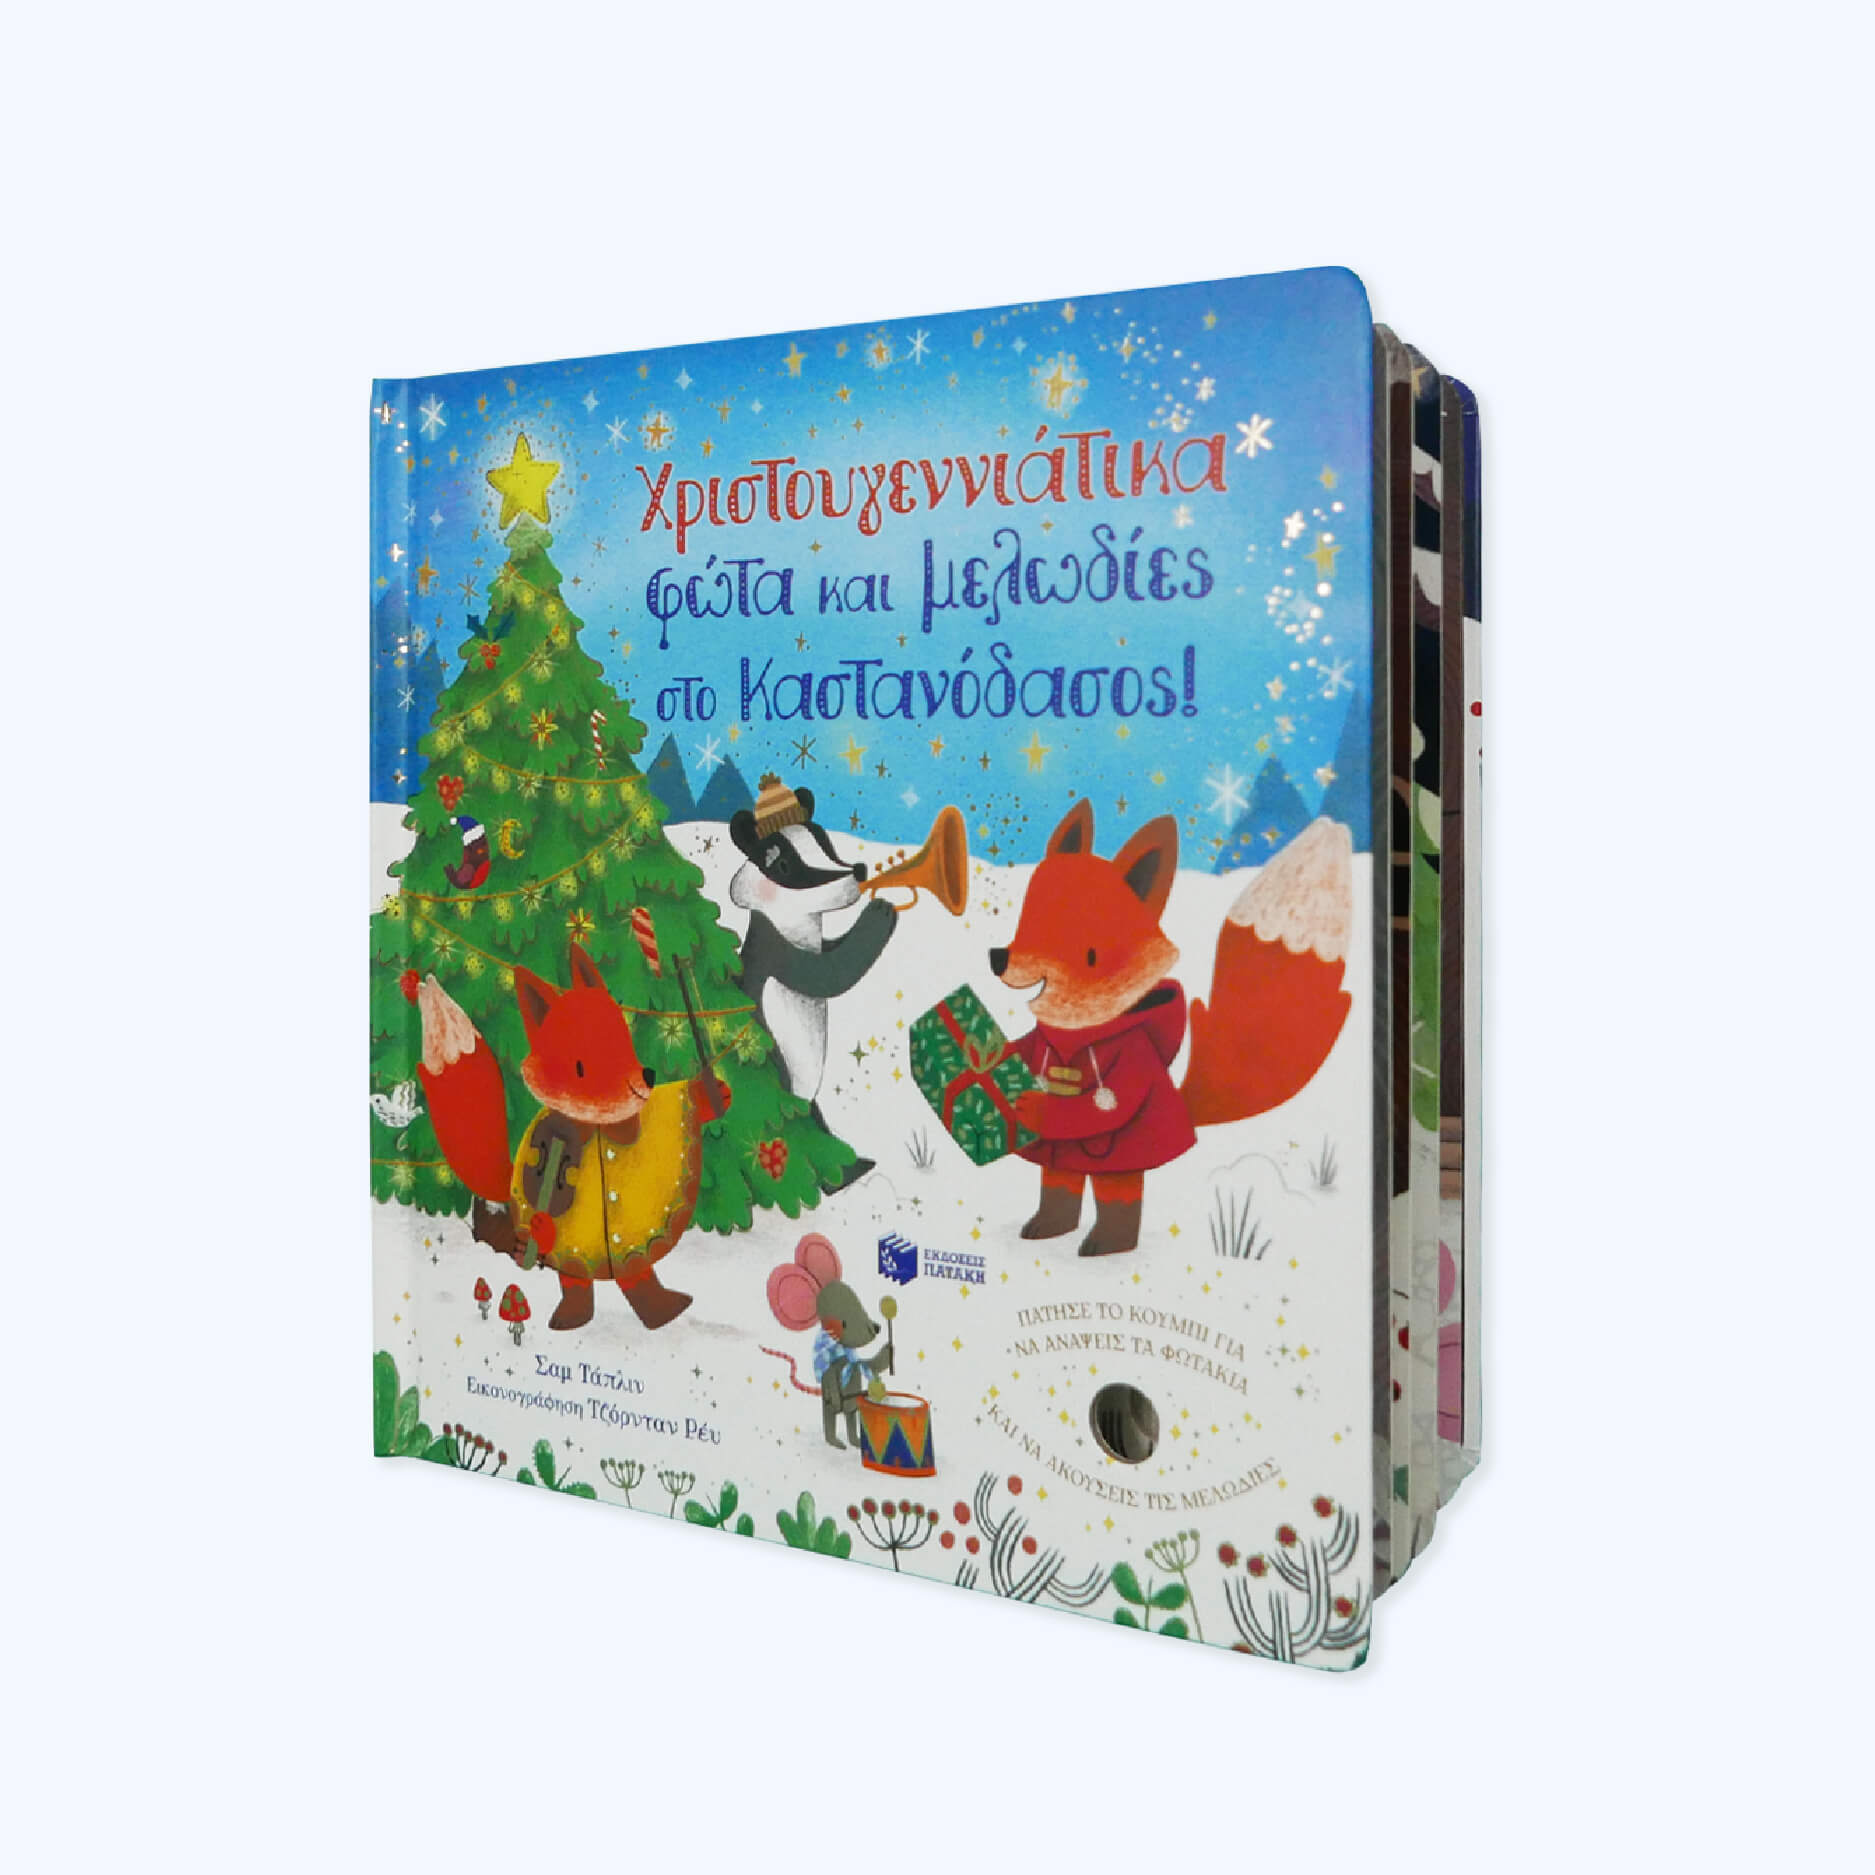 Πατάκης Χριστουγεννιάτικα Φώτα Και Μελωδίες Στο Καστανοδάσος 10648 - Patakis